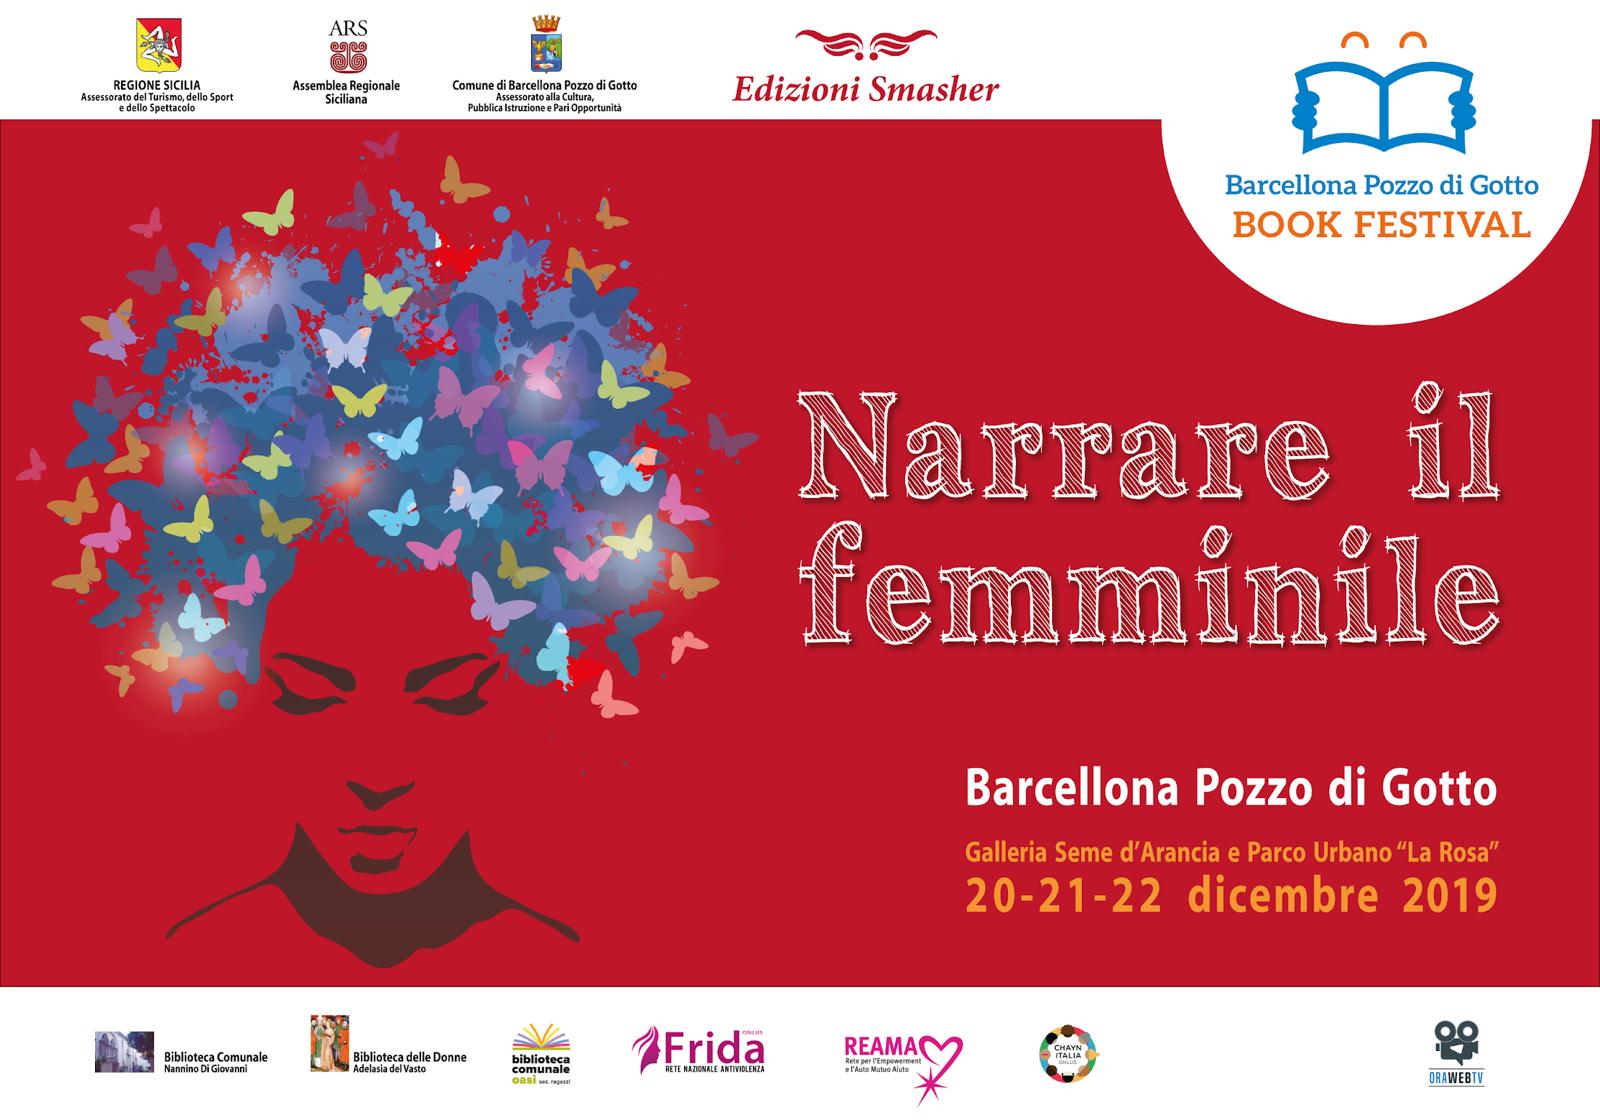 Barcellona PG. Grandissimo successo per la prima edizione di “Narrare il femminile” al Barcellona Book Festival